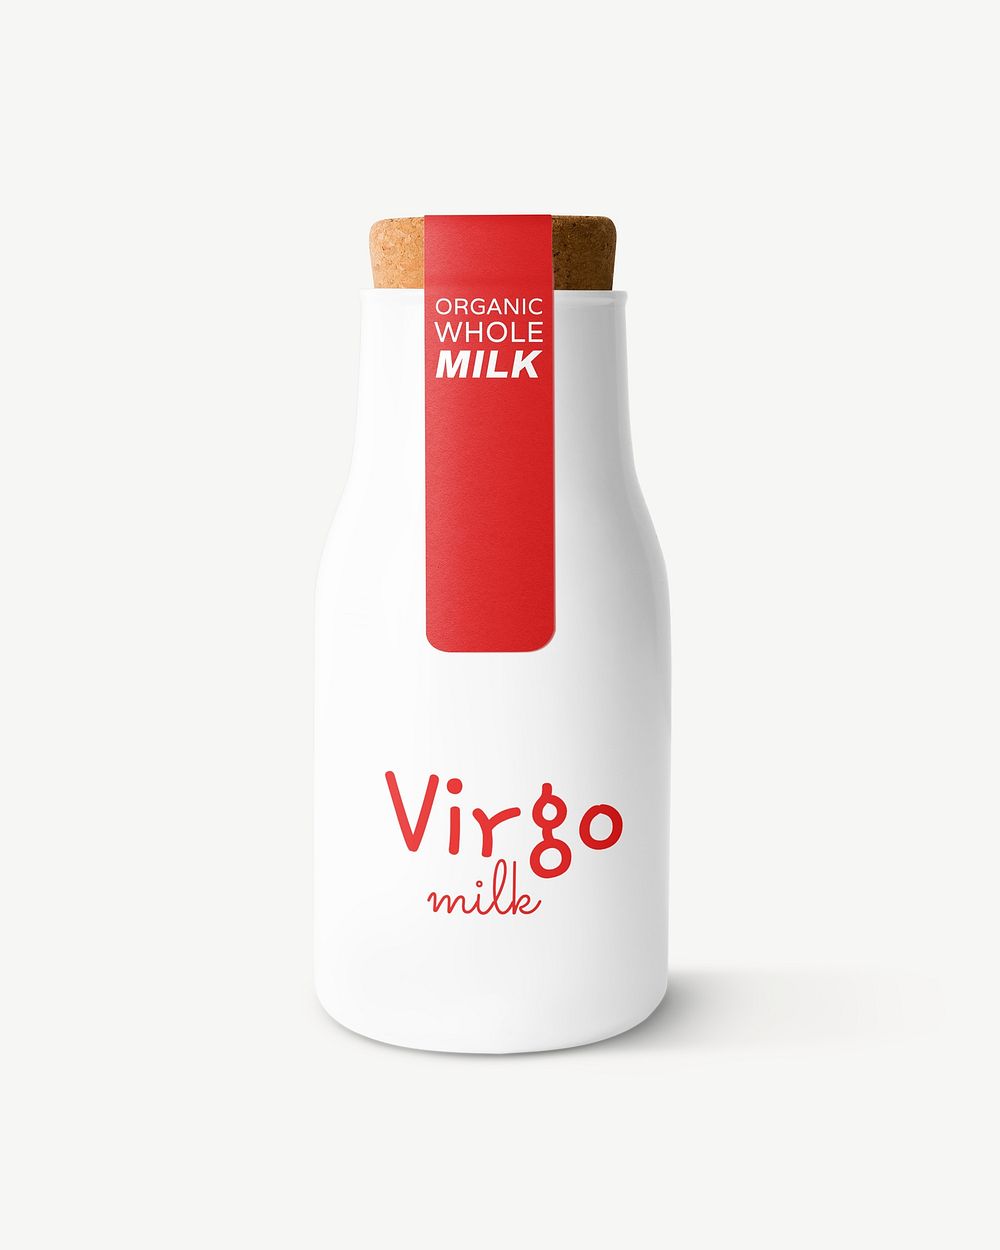 Milk bottle label mockup, beverage product packaging psd